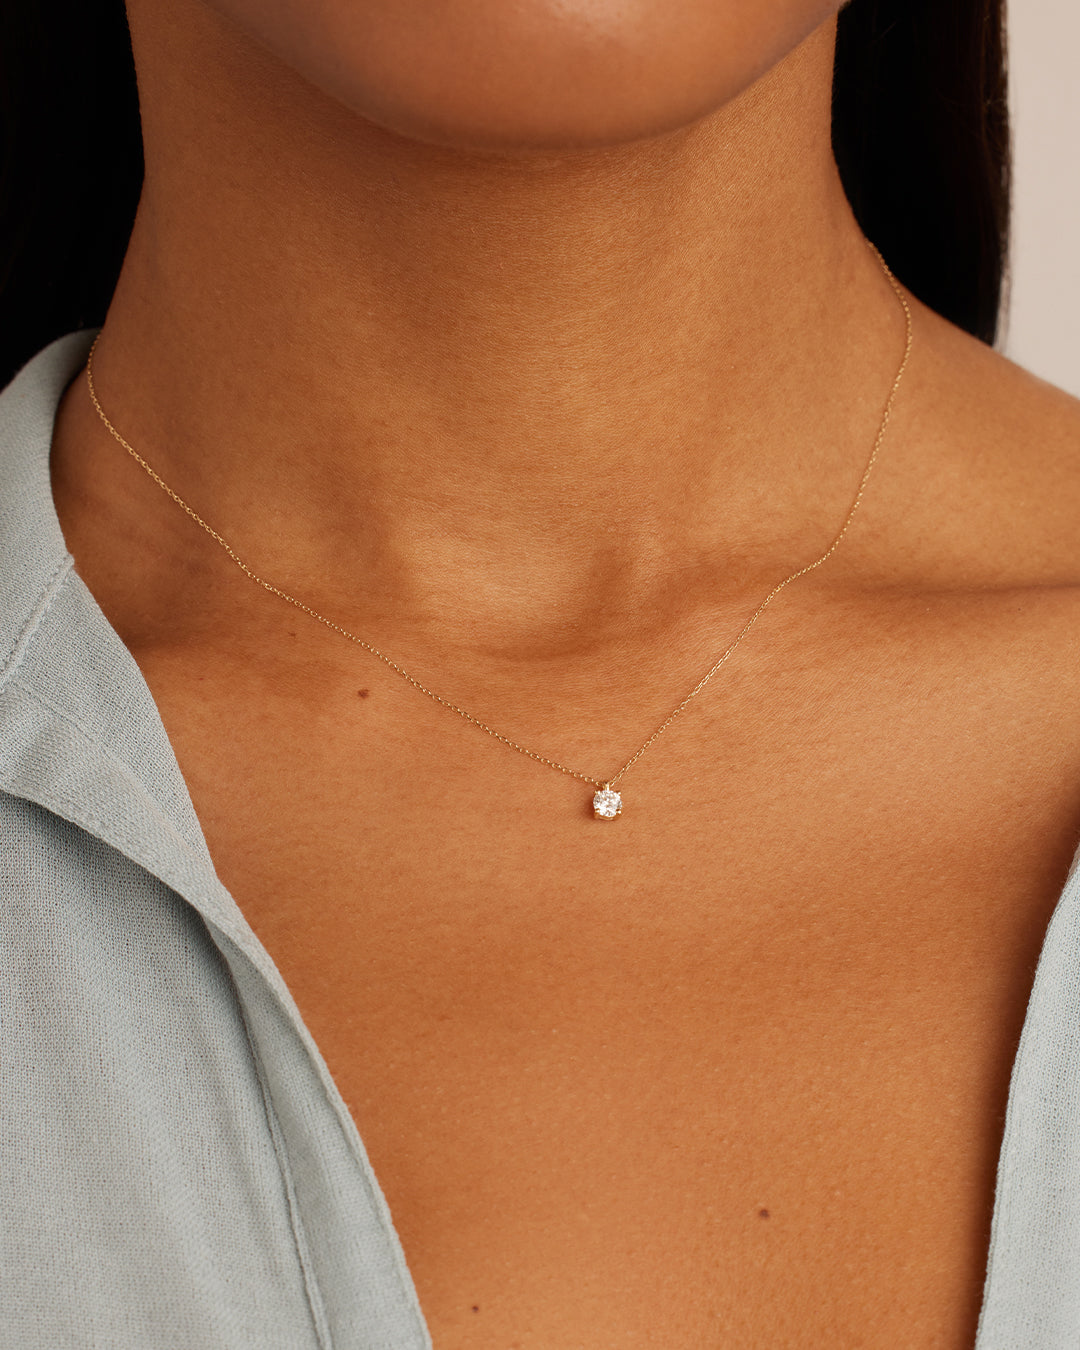 Diamond Necklaces